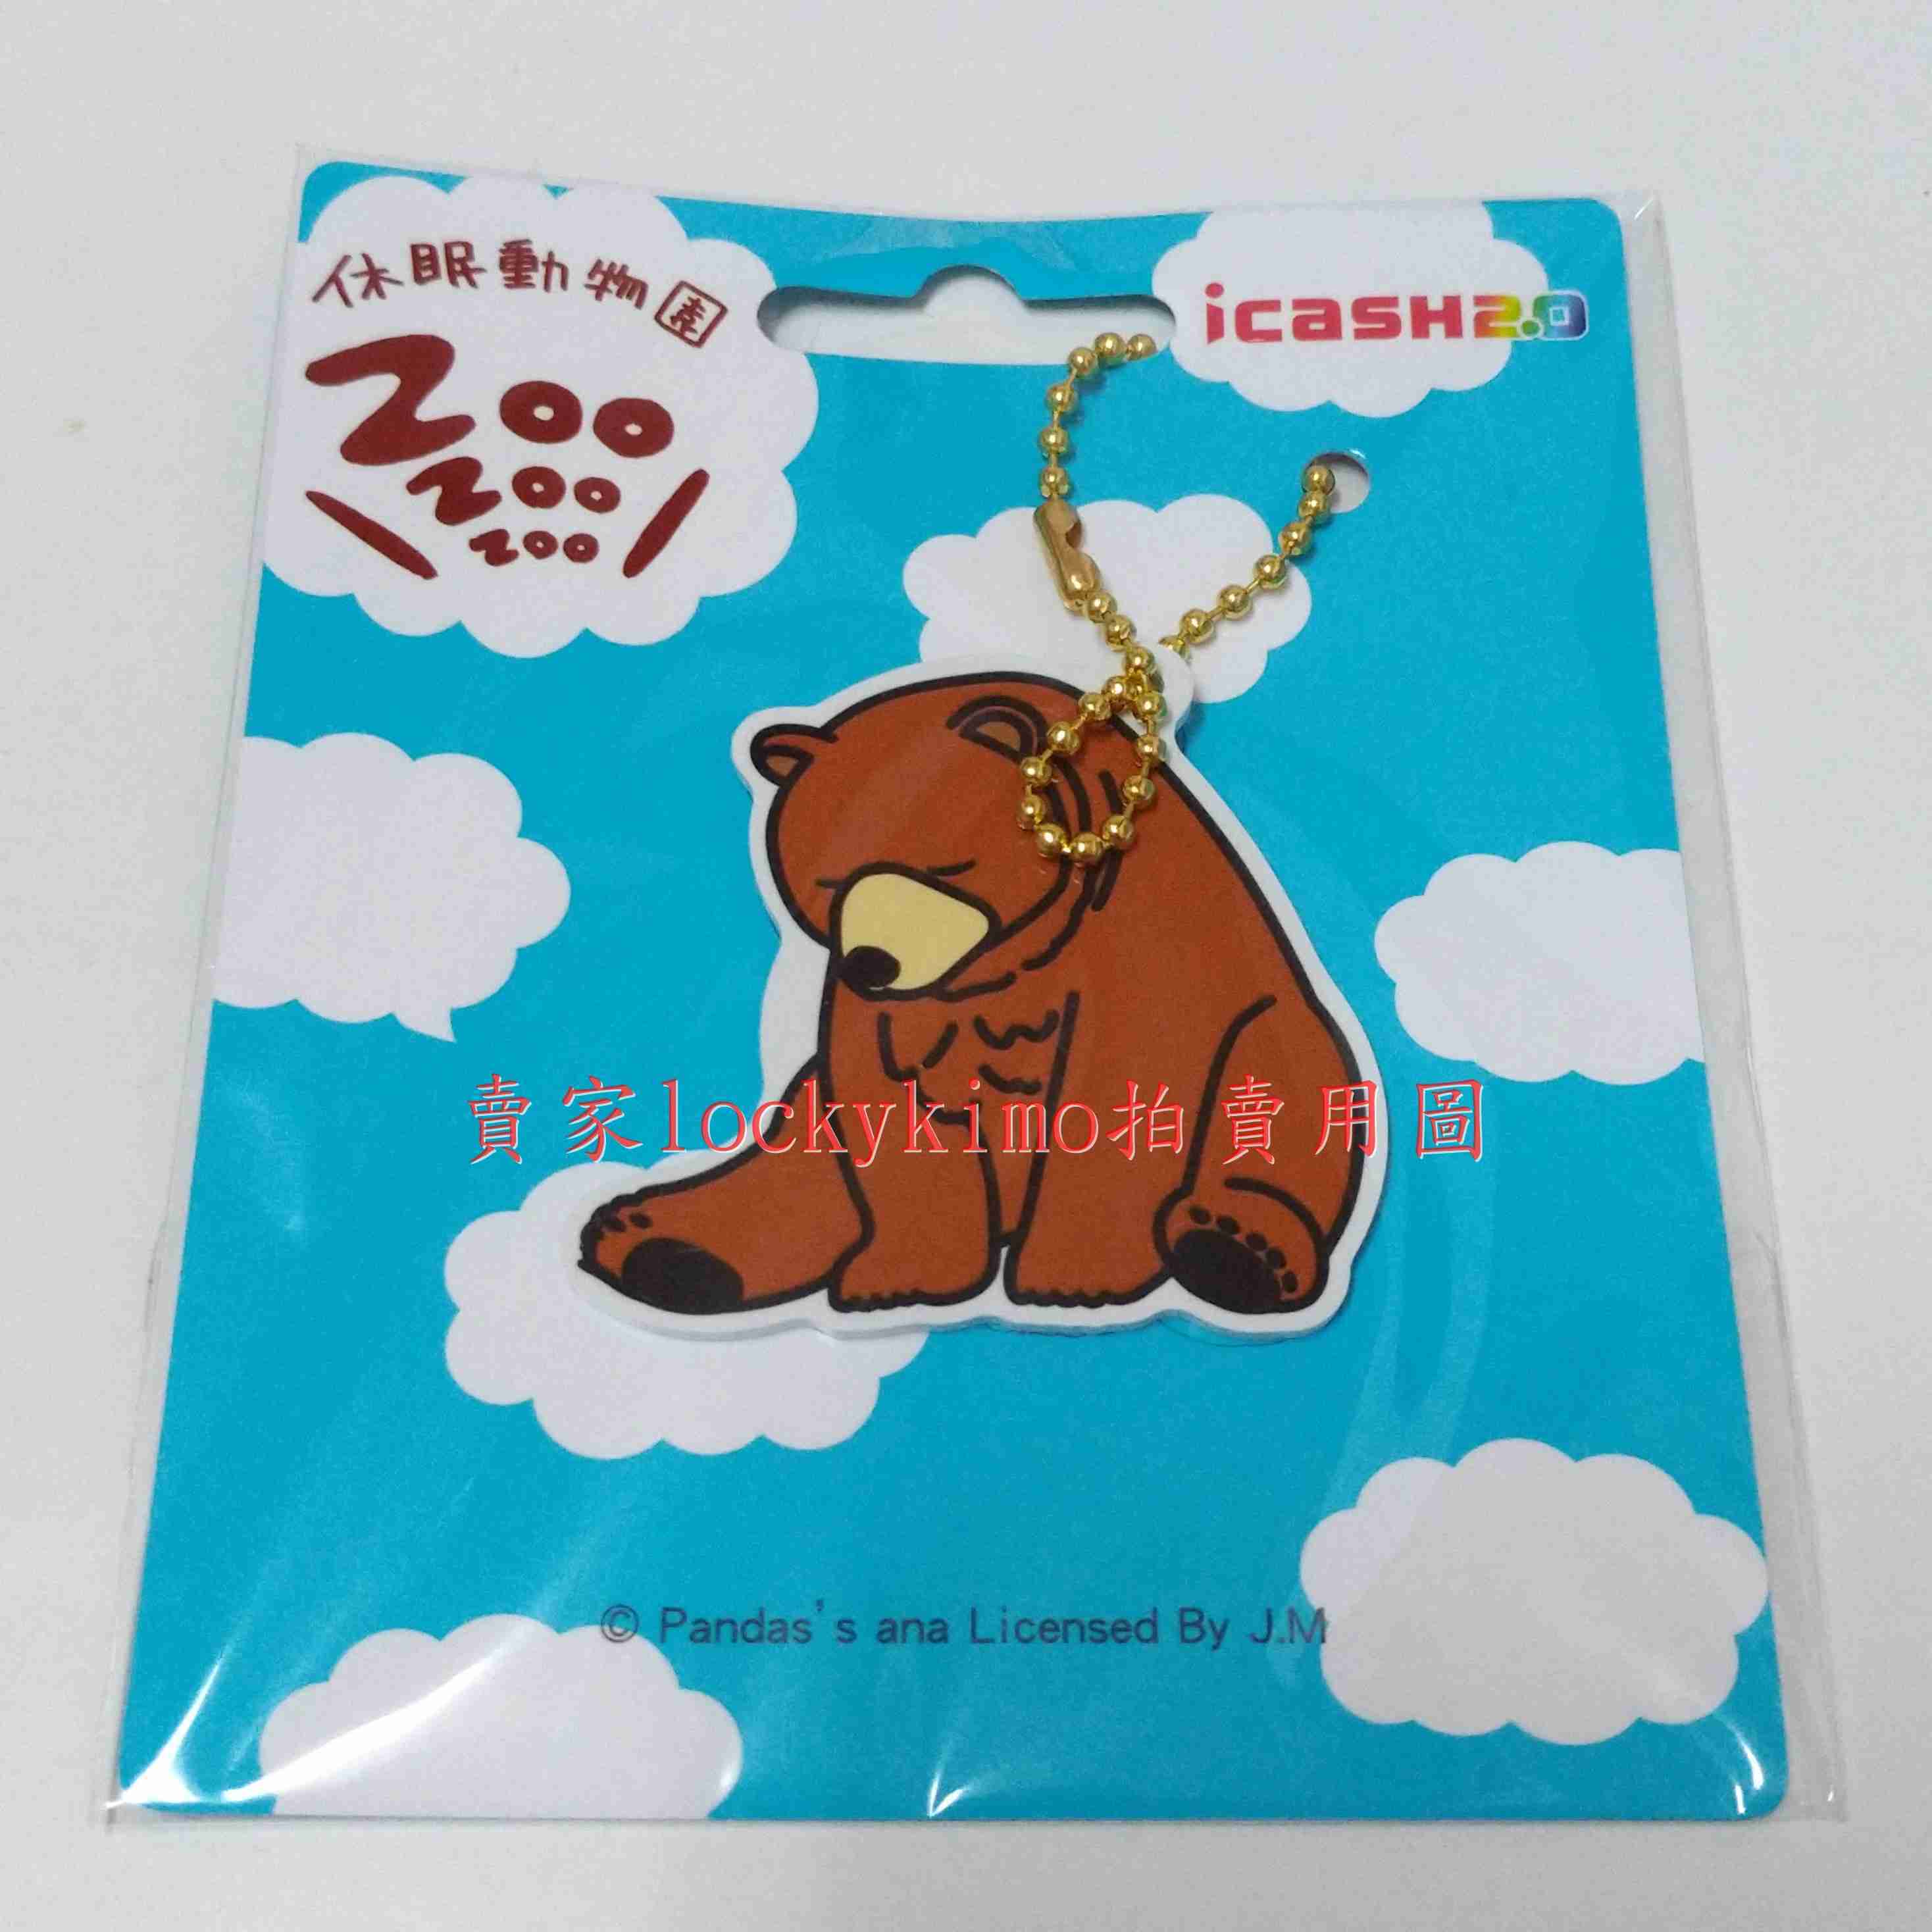 【休眠動物園 icash 空卡 棕熊 吊飾】熊貓之穴 ZooZooZoo 收藏卡 珍藏卡 愛金卡 熊 睡覺 造型 卡 新